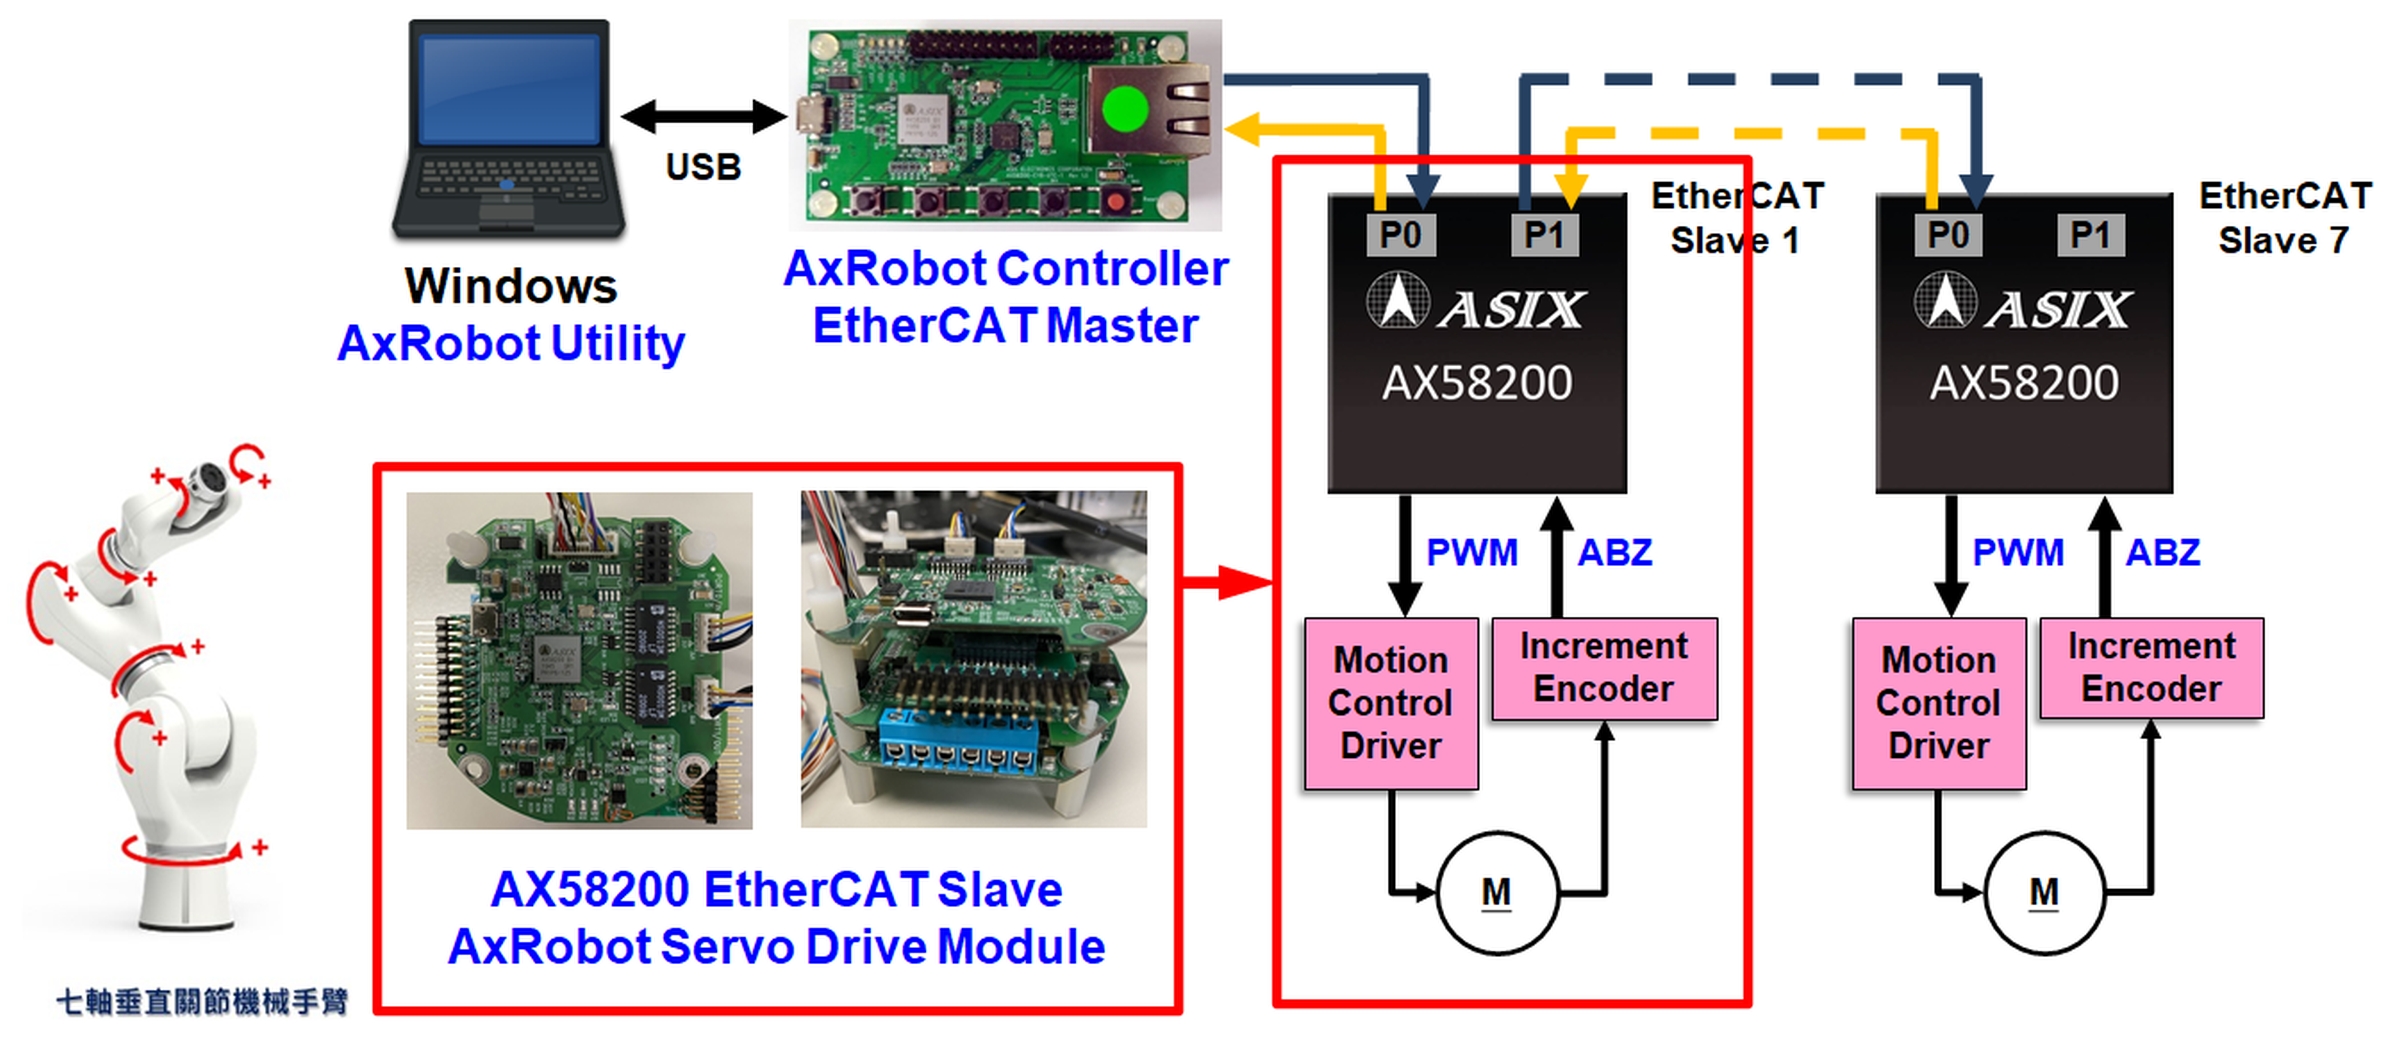 亞信推出最新AxRobot EtherCAT七軸助力控制機器手臂解決方案